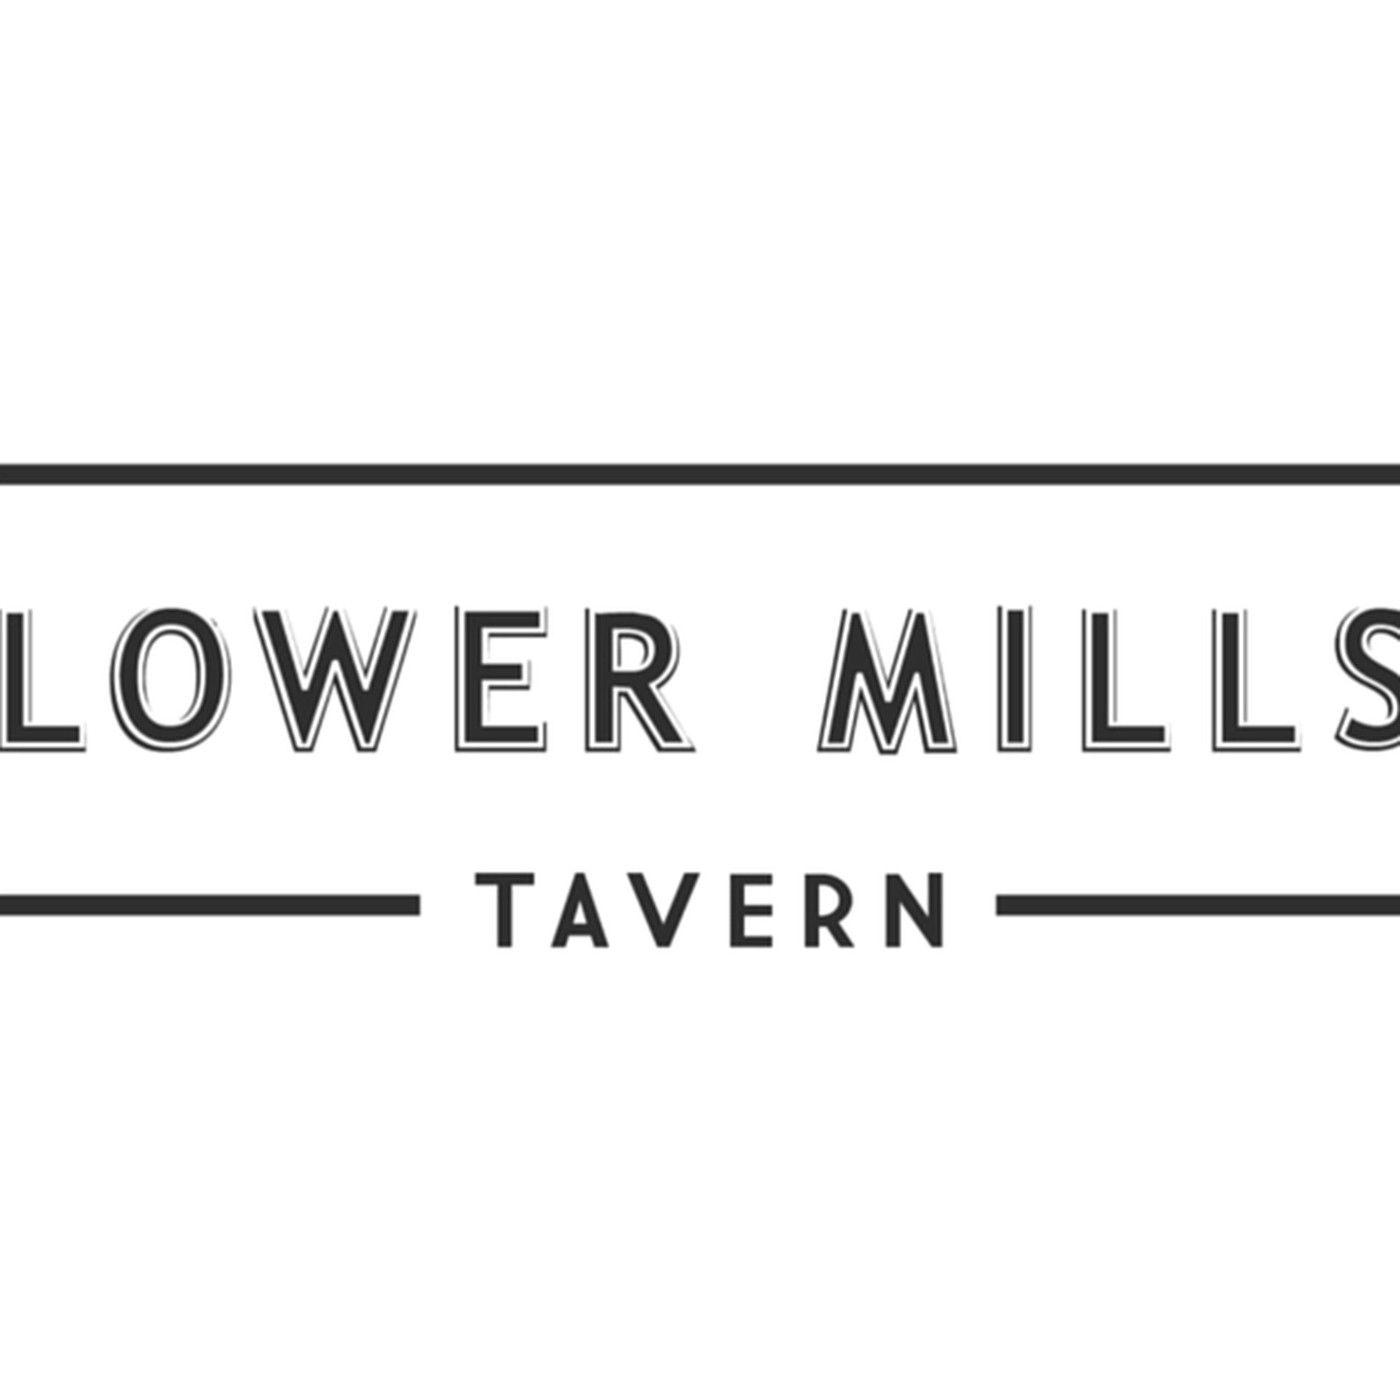 Dorchester Logo - Lower Mills Tavern Will Open Soon in Dorchester